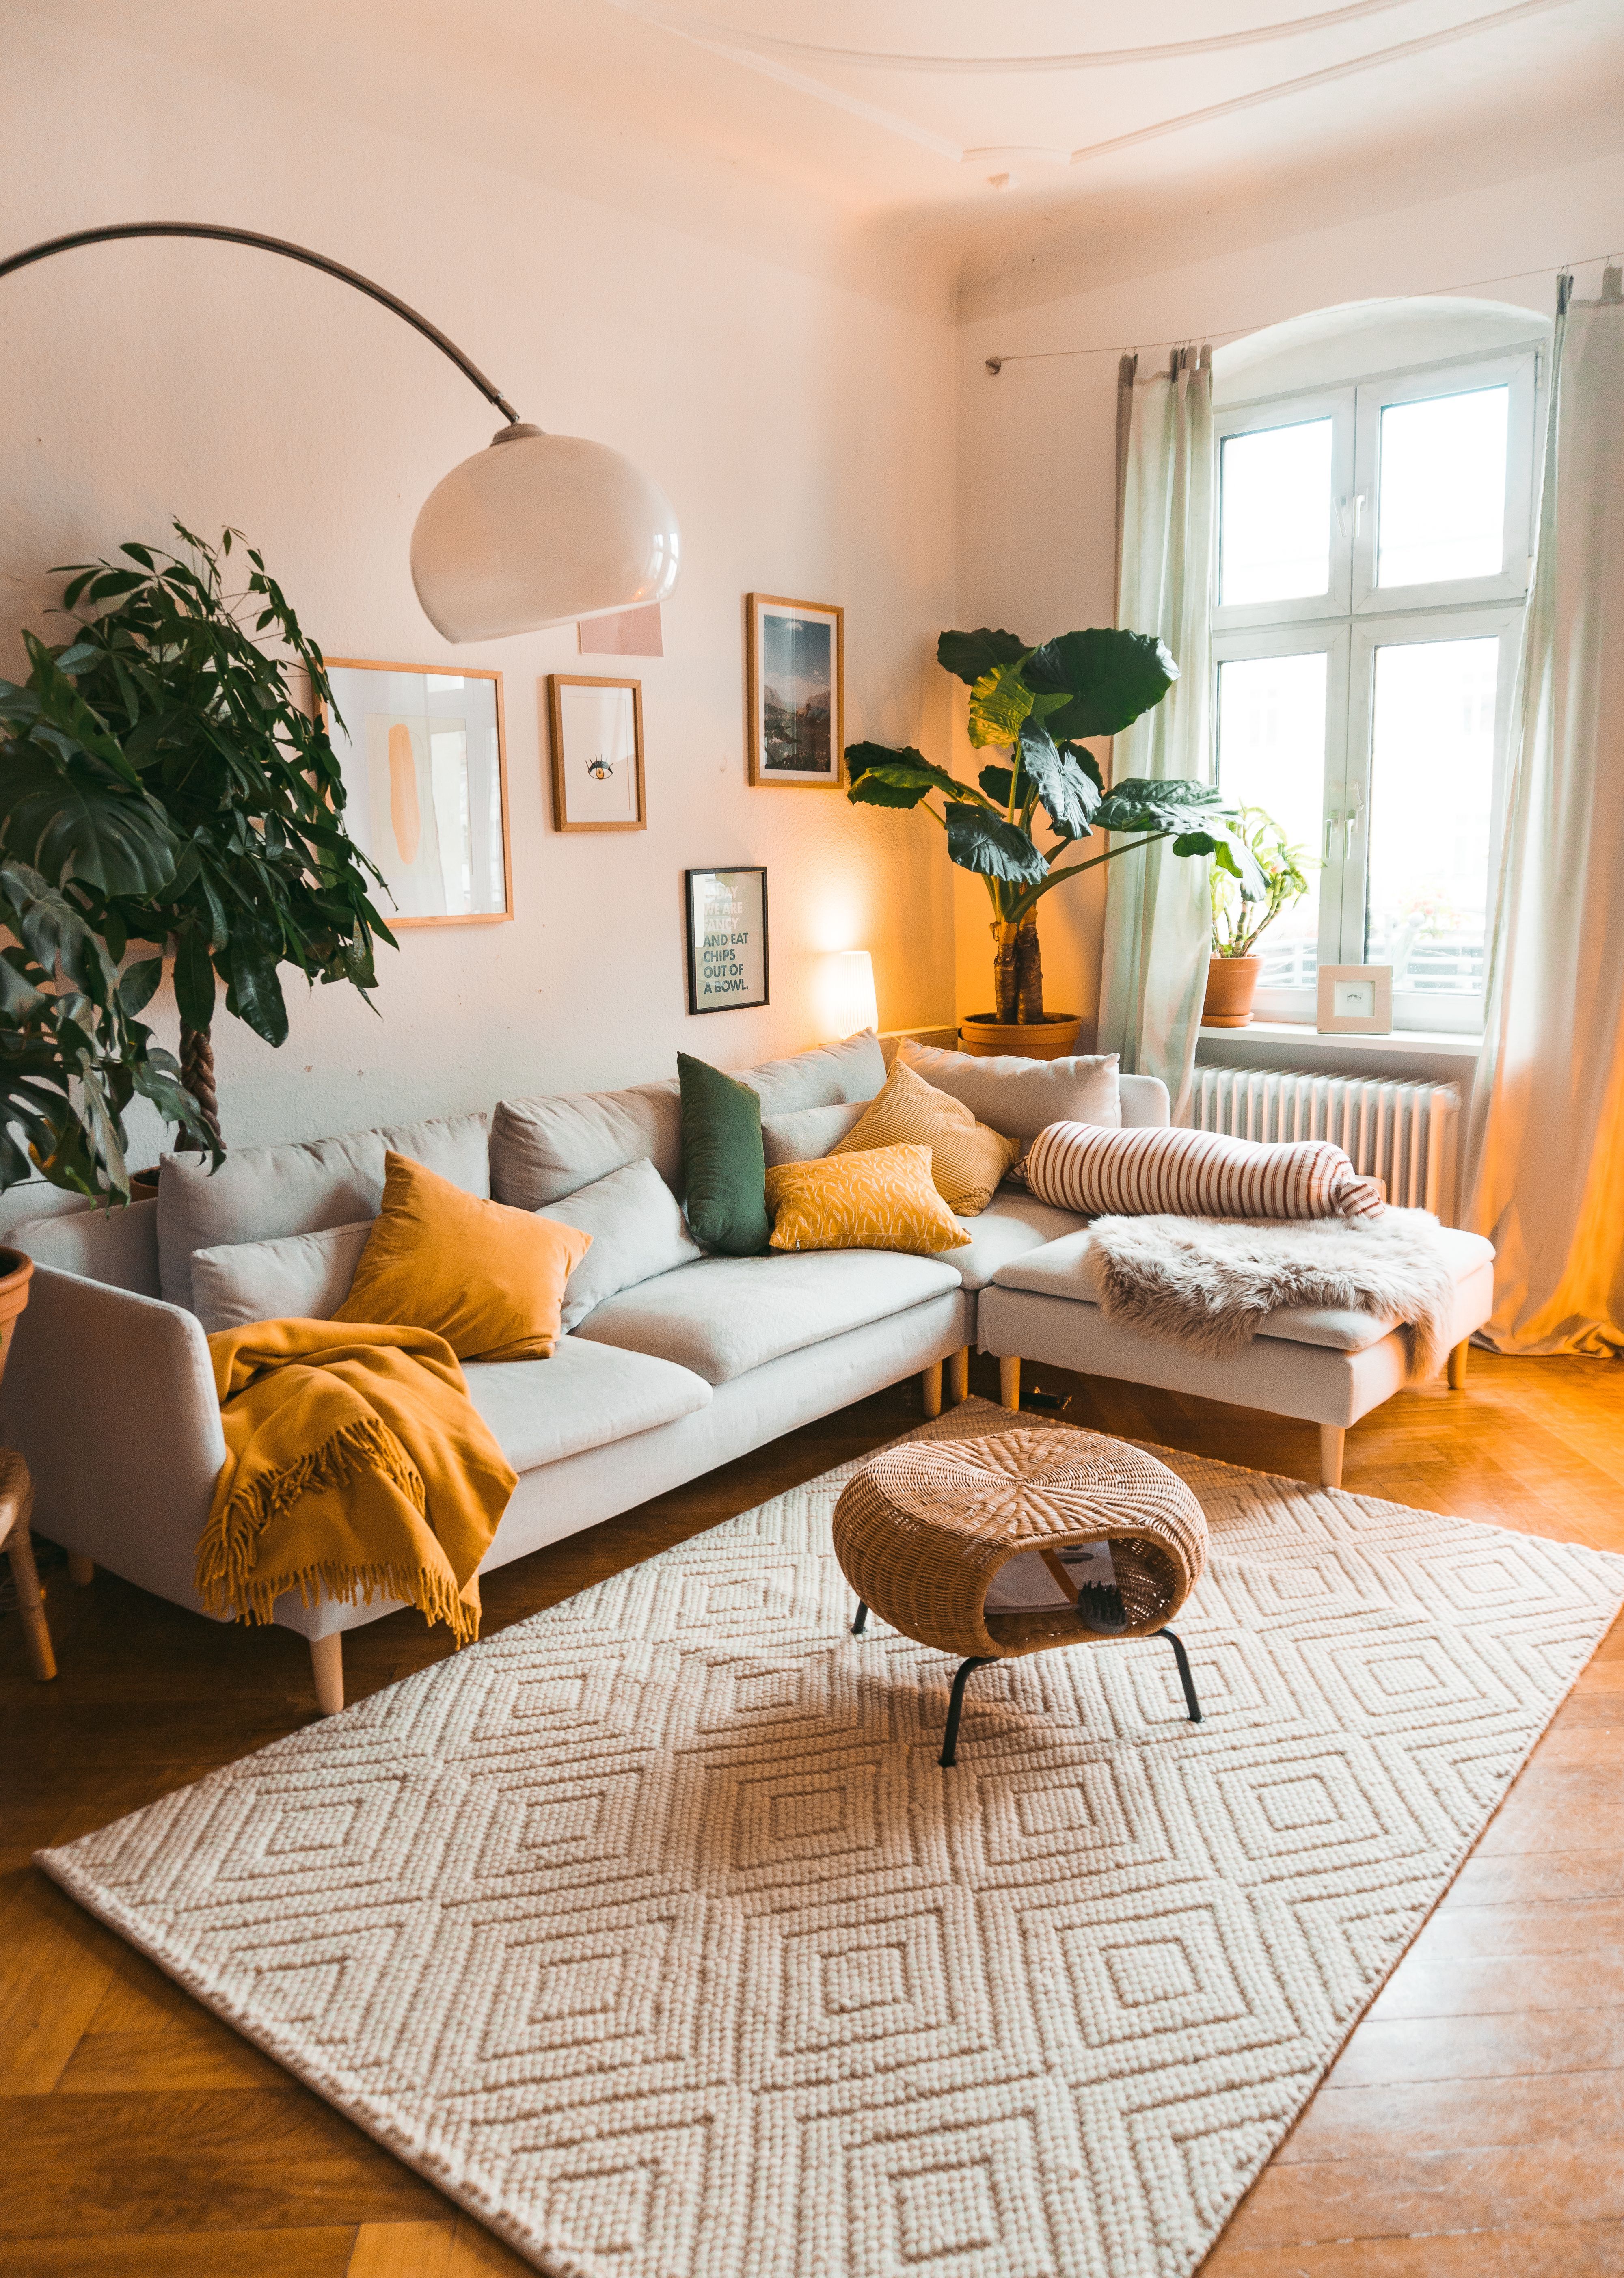 Die Macht der Textilien - stoffliche Materialkunde mit fridlaa -   13 home accents Decorative living room ideas